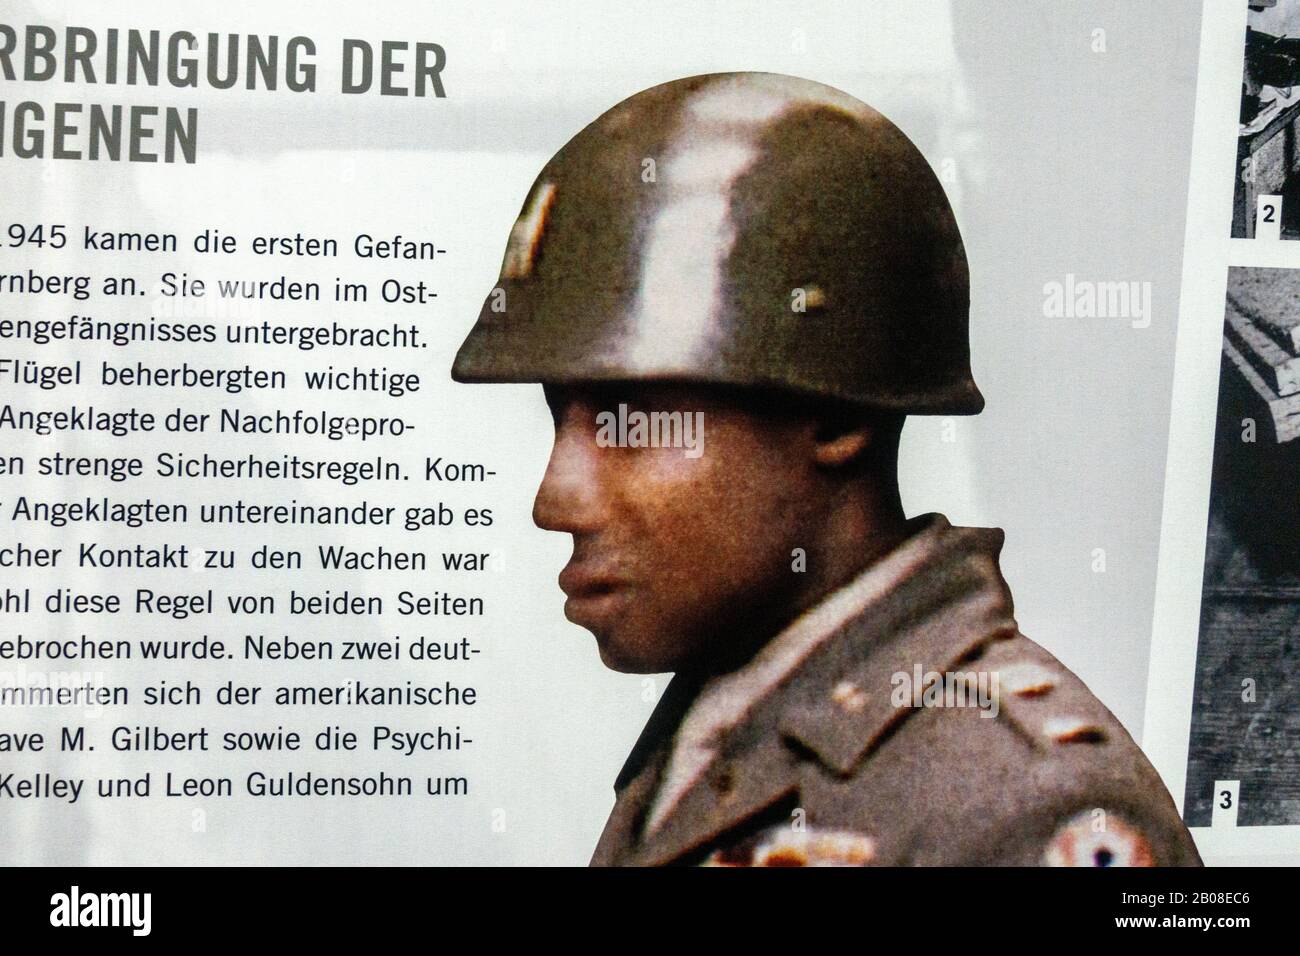 Fragwürdiges Foto-Shop-Bild eines afroamerikanischen Soldaten bei den Nürnberger Prozessen (siehe Notizen), Memorium Nürnberg Trials, Nürnberg, Deutschland. Stockfoto